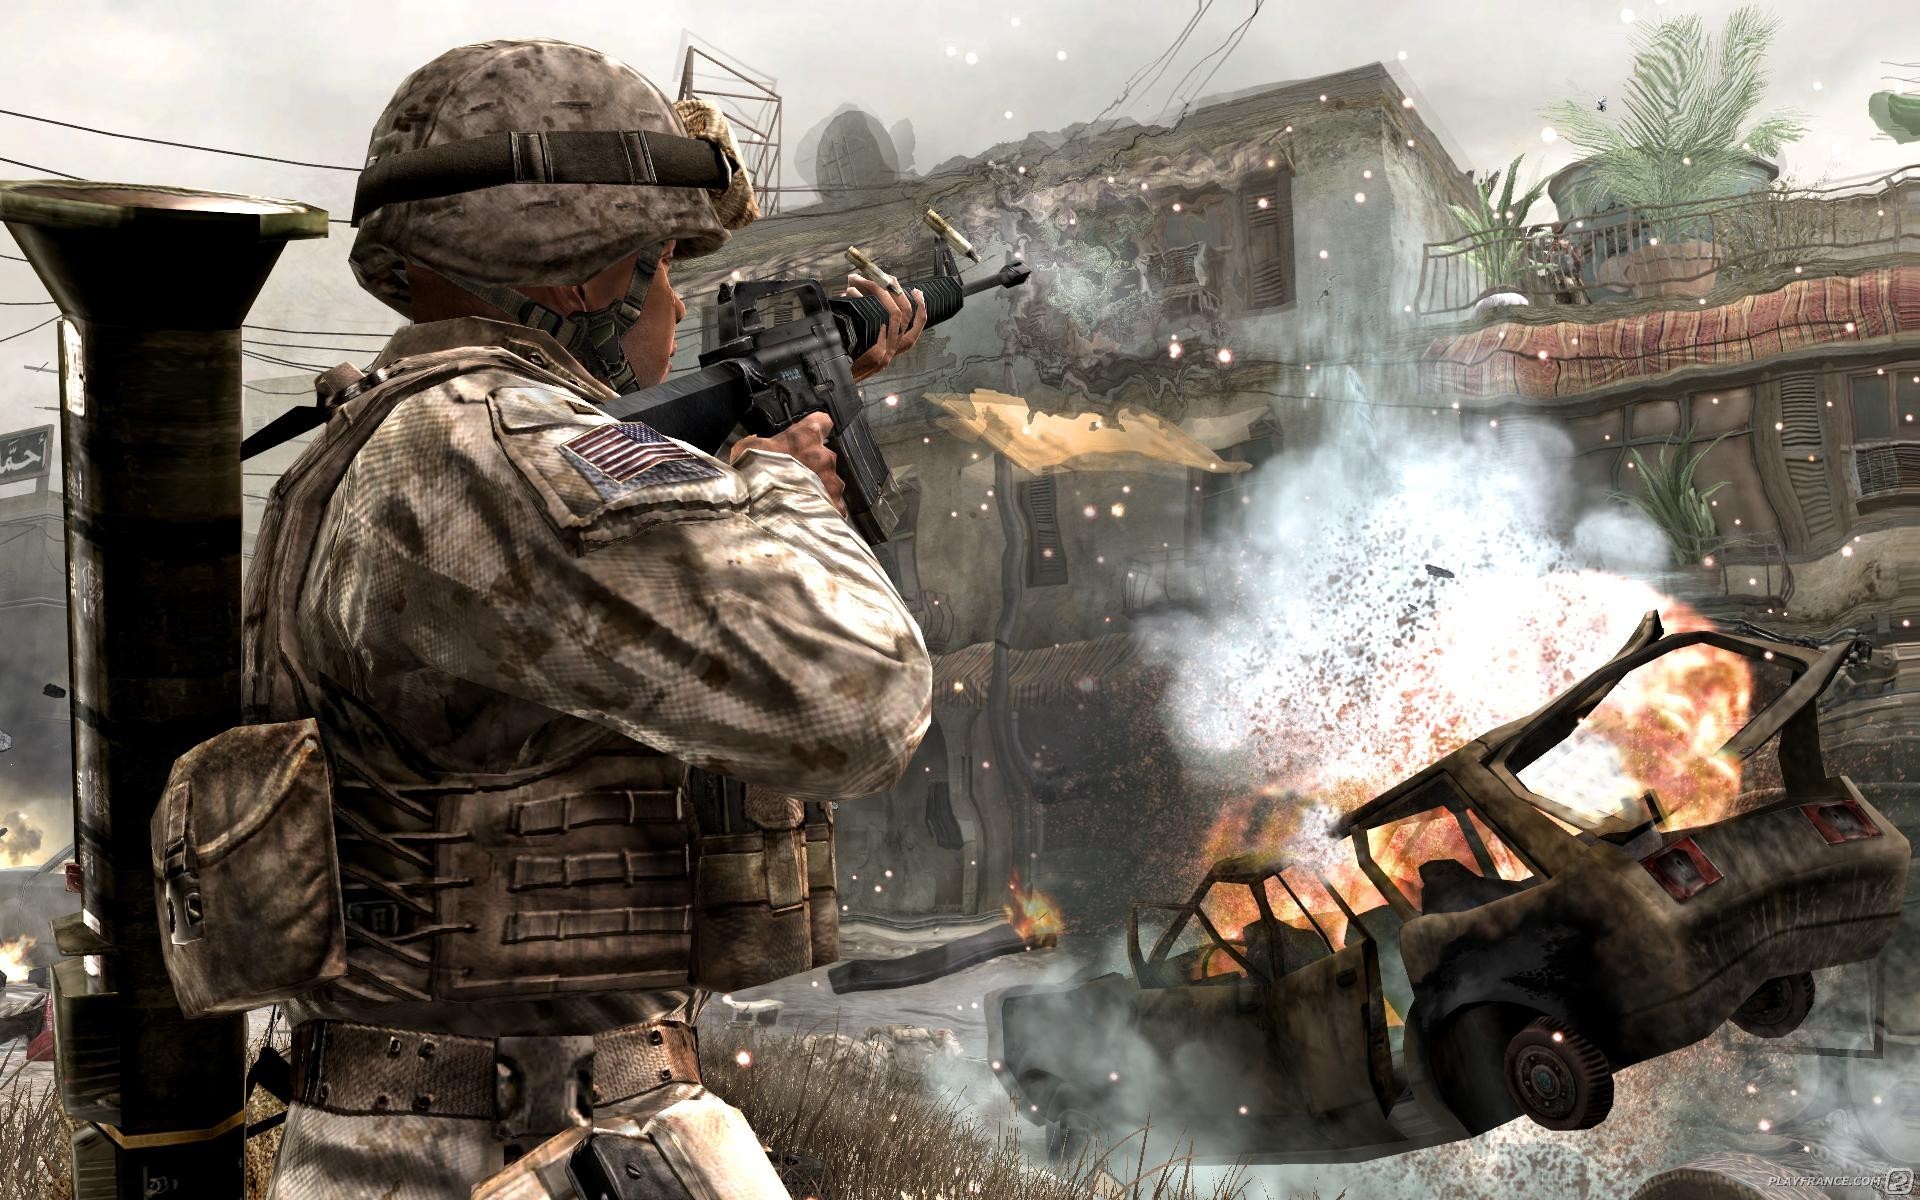 Call of Duty 4 : Modern Warfare